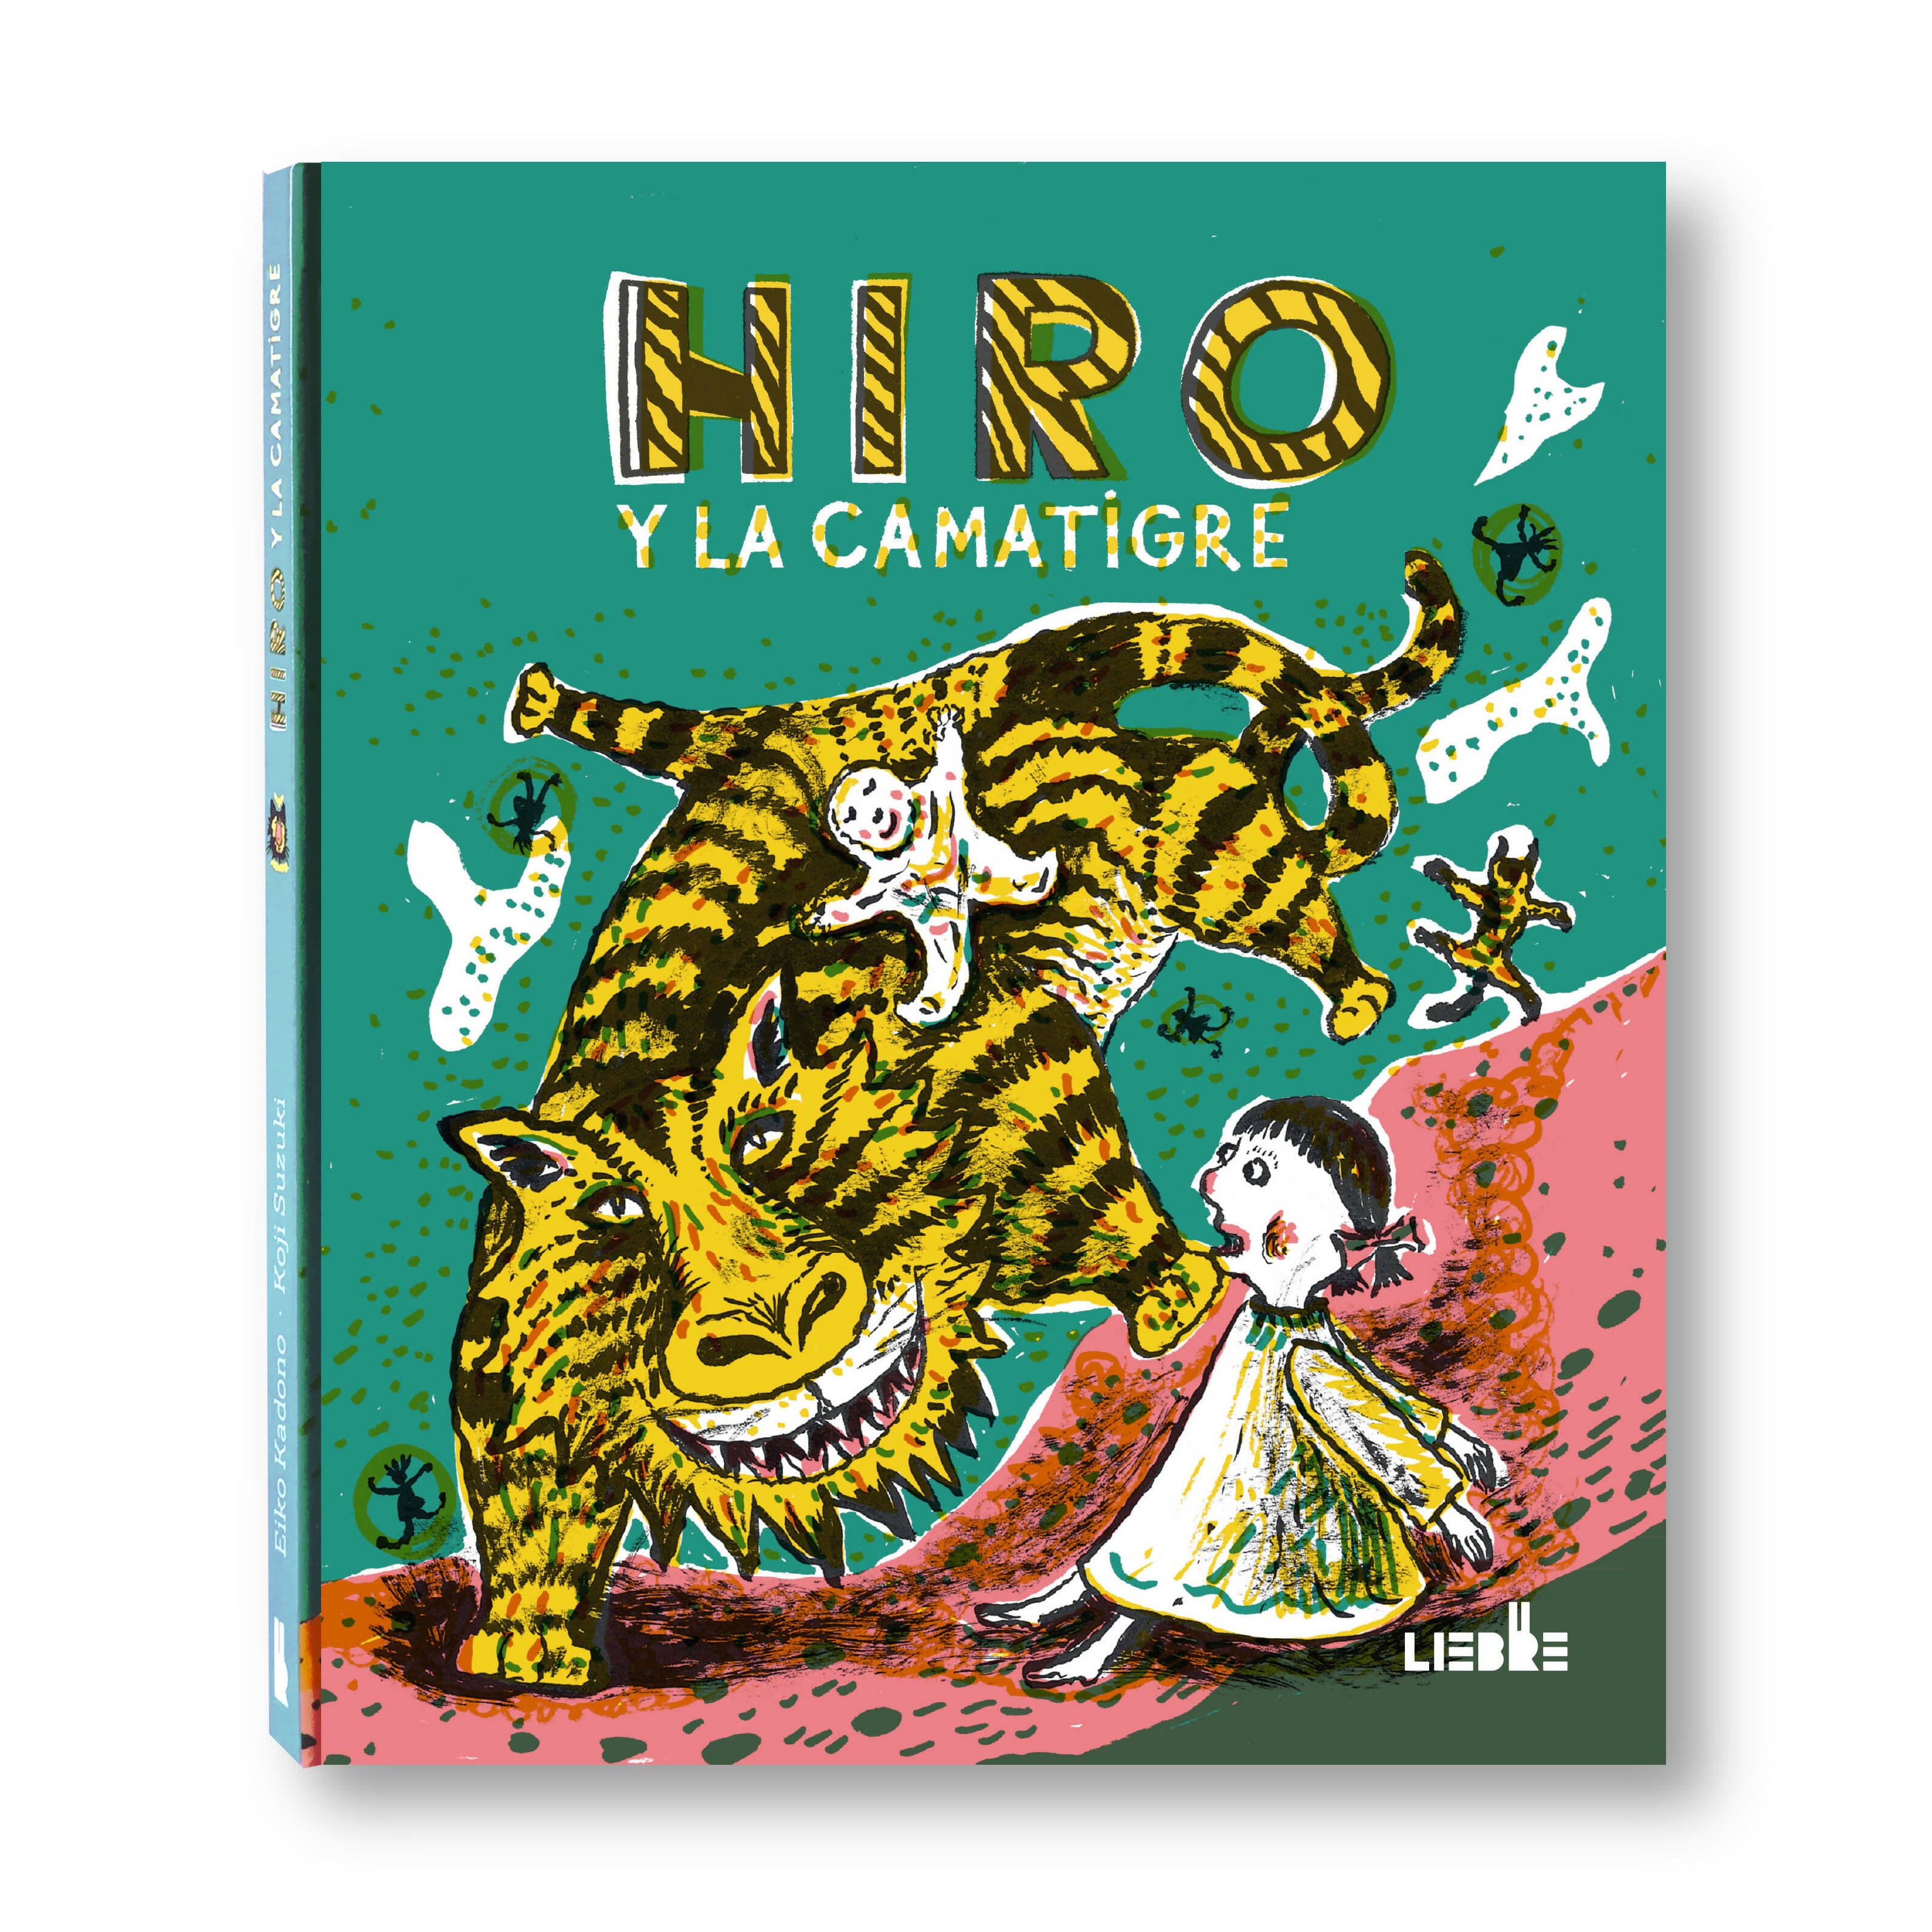 Hiro y la Camatigre